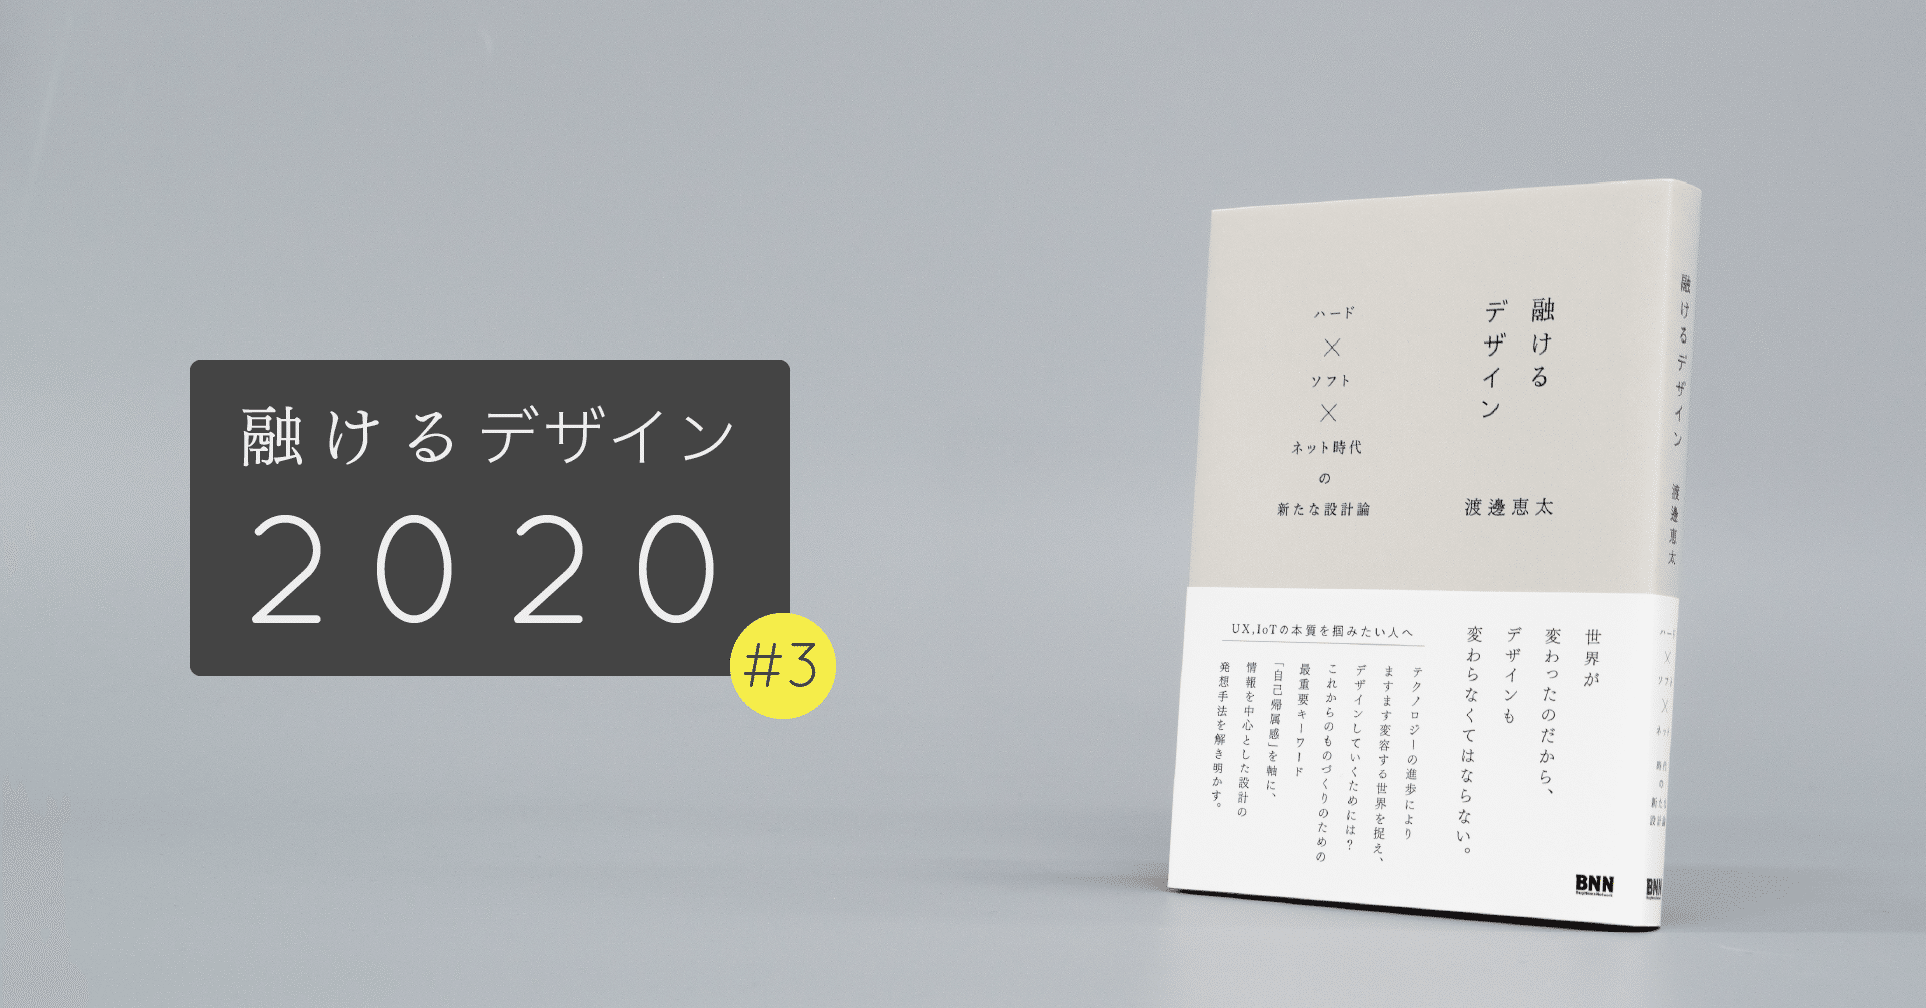 Macintoshは心理学者が設計している｜融けるデザイン2020 #3｜渡邊恵太